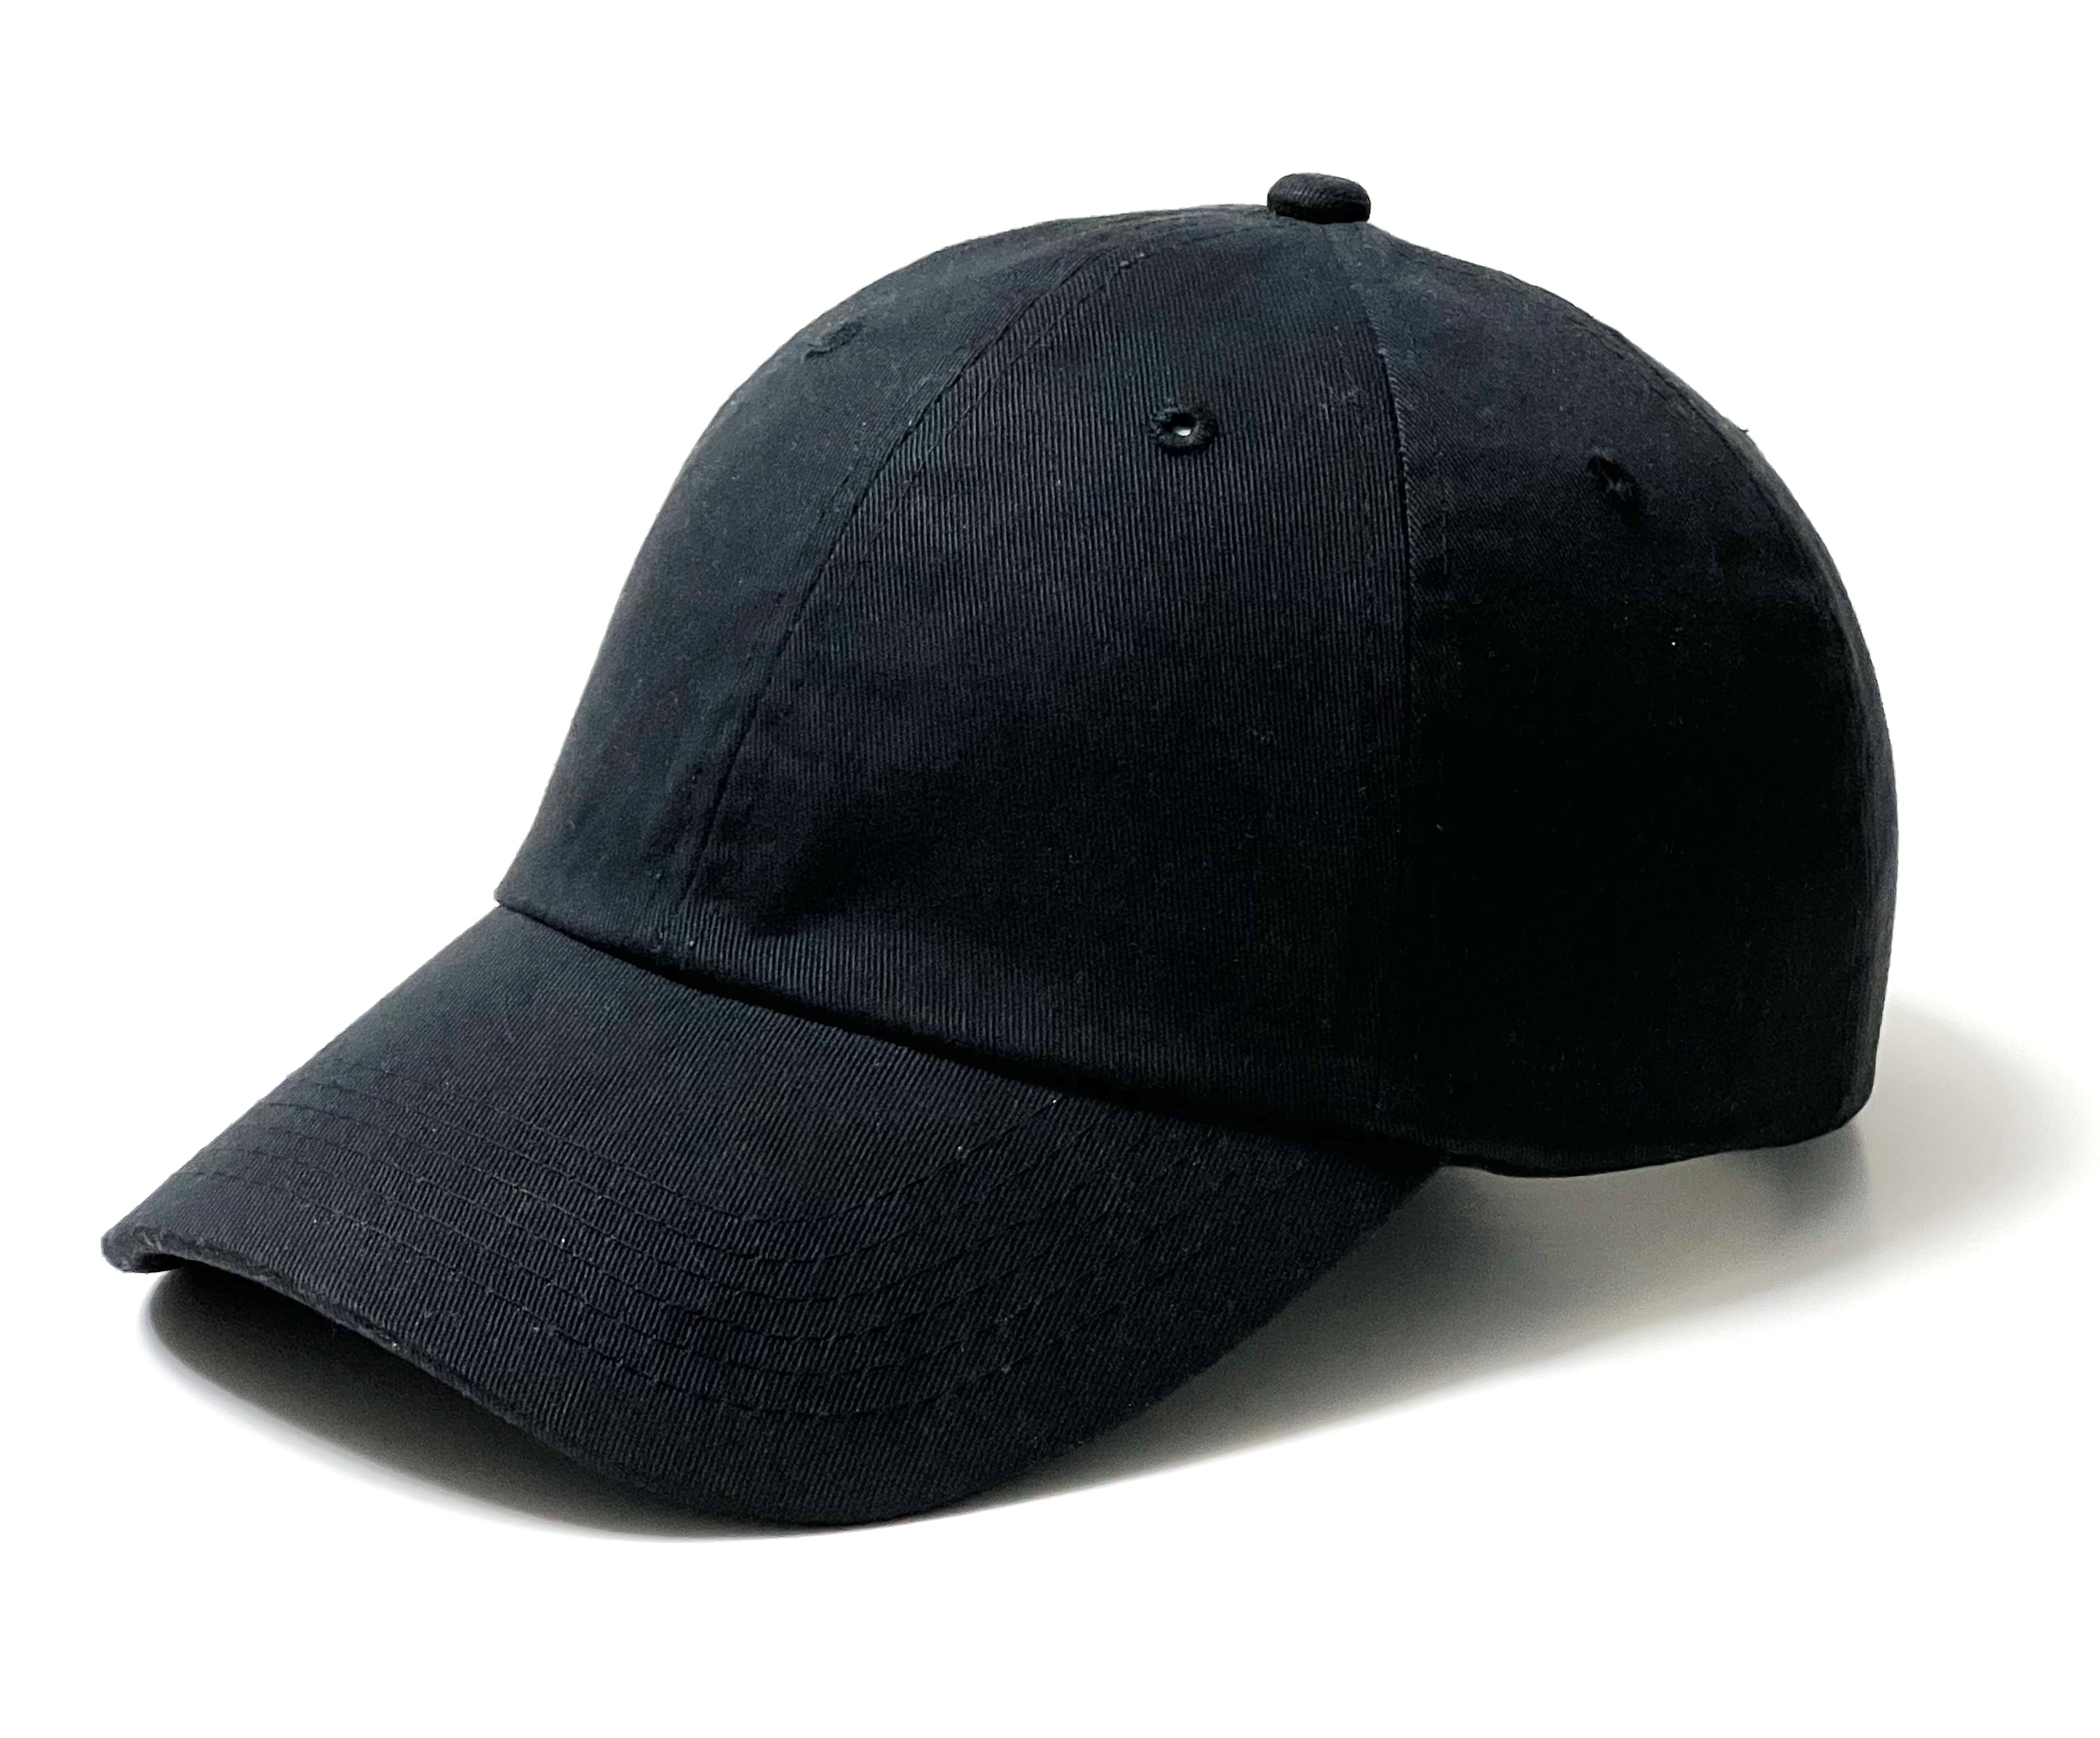 DALIX Unisex Unstructured Cotton Cap Adjustable Plain Hat in Lavender